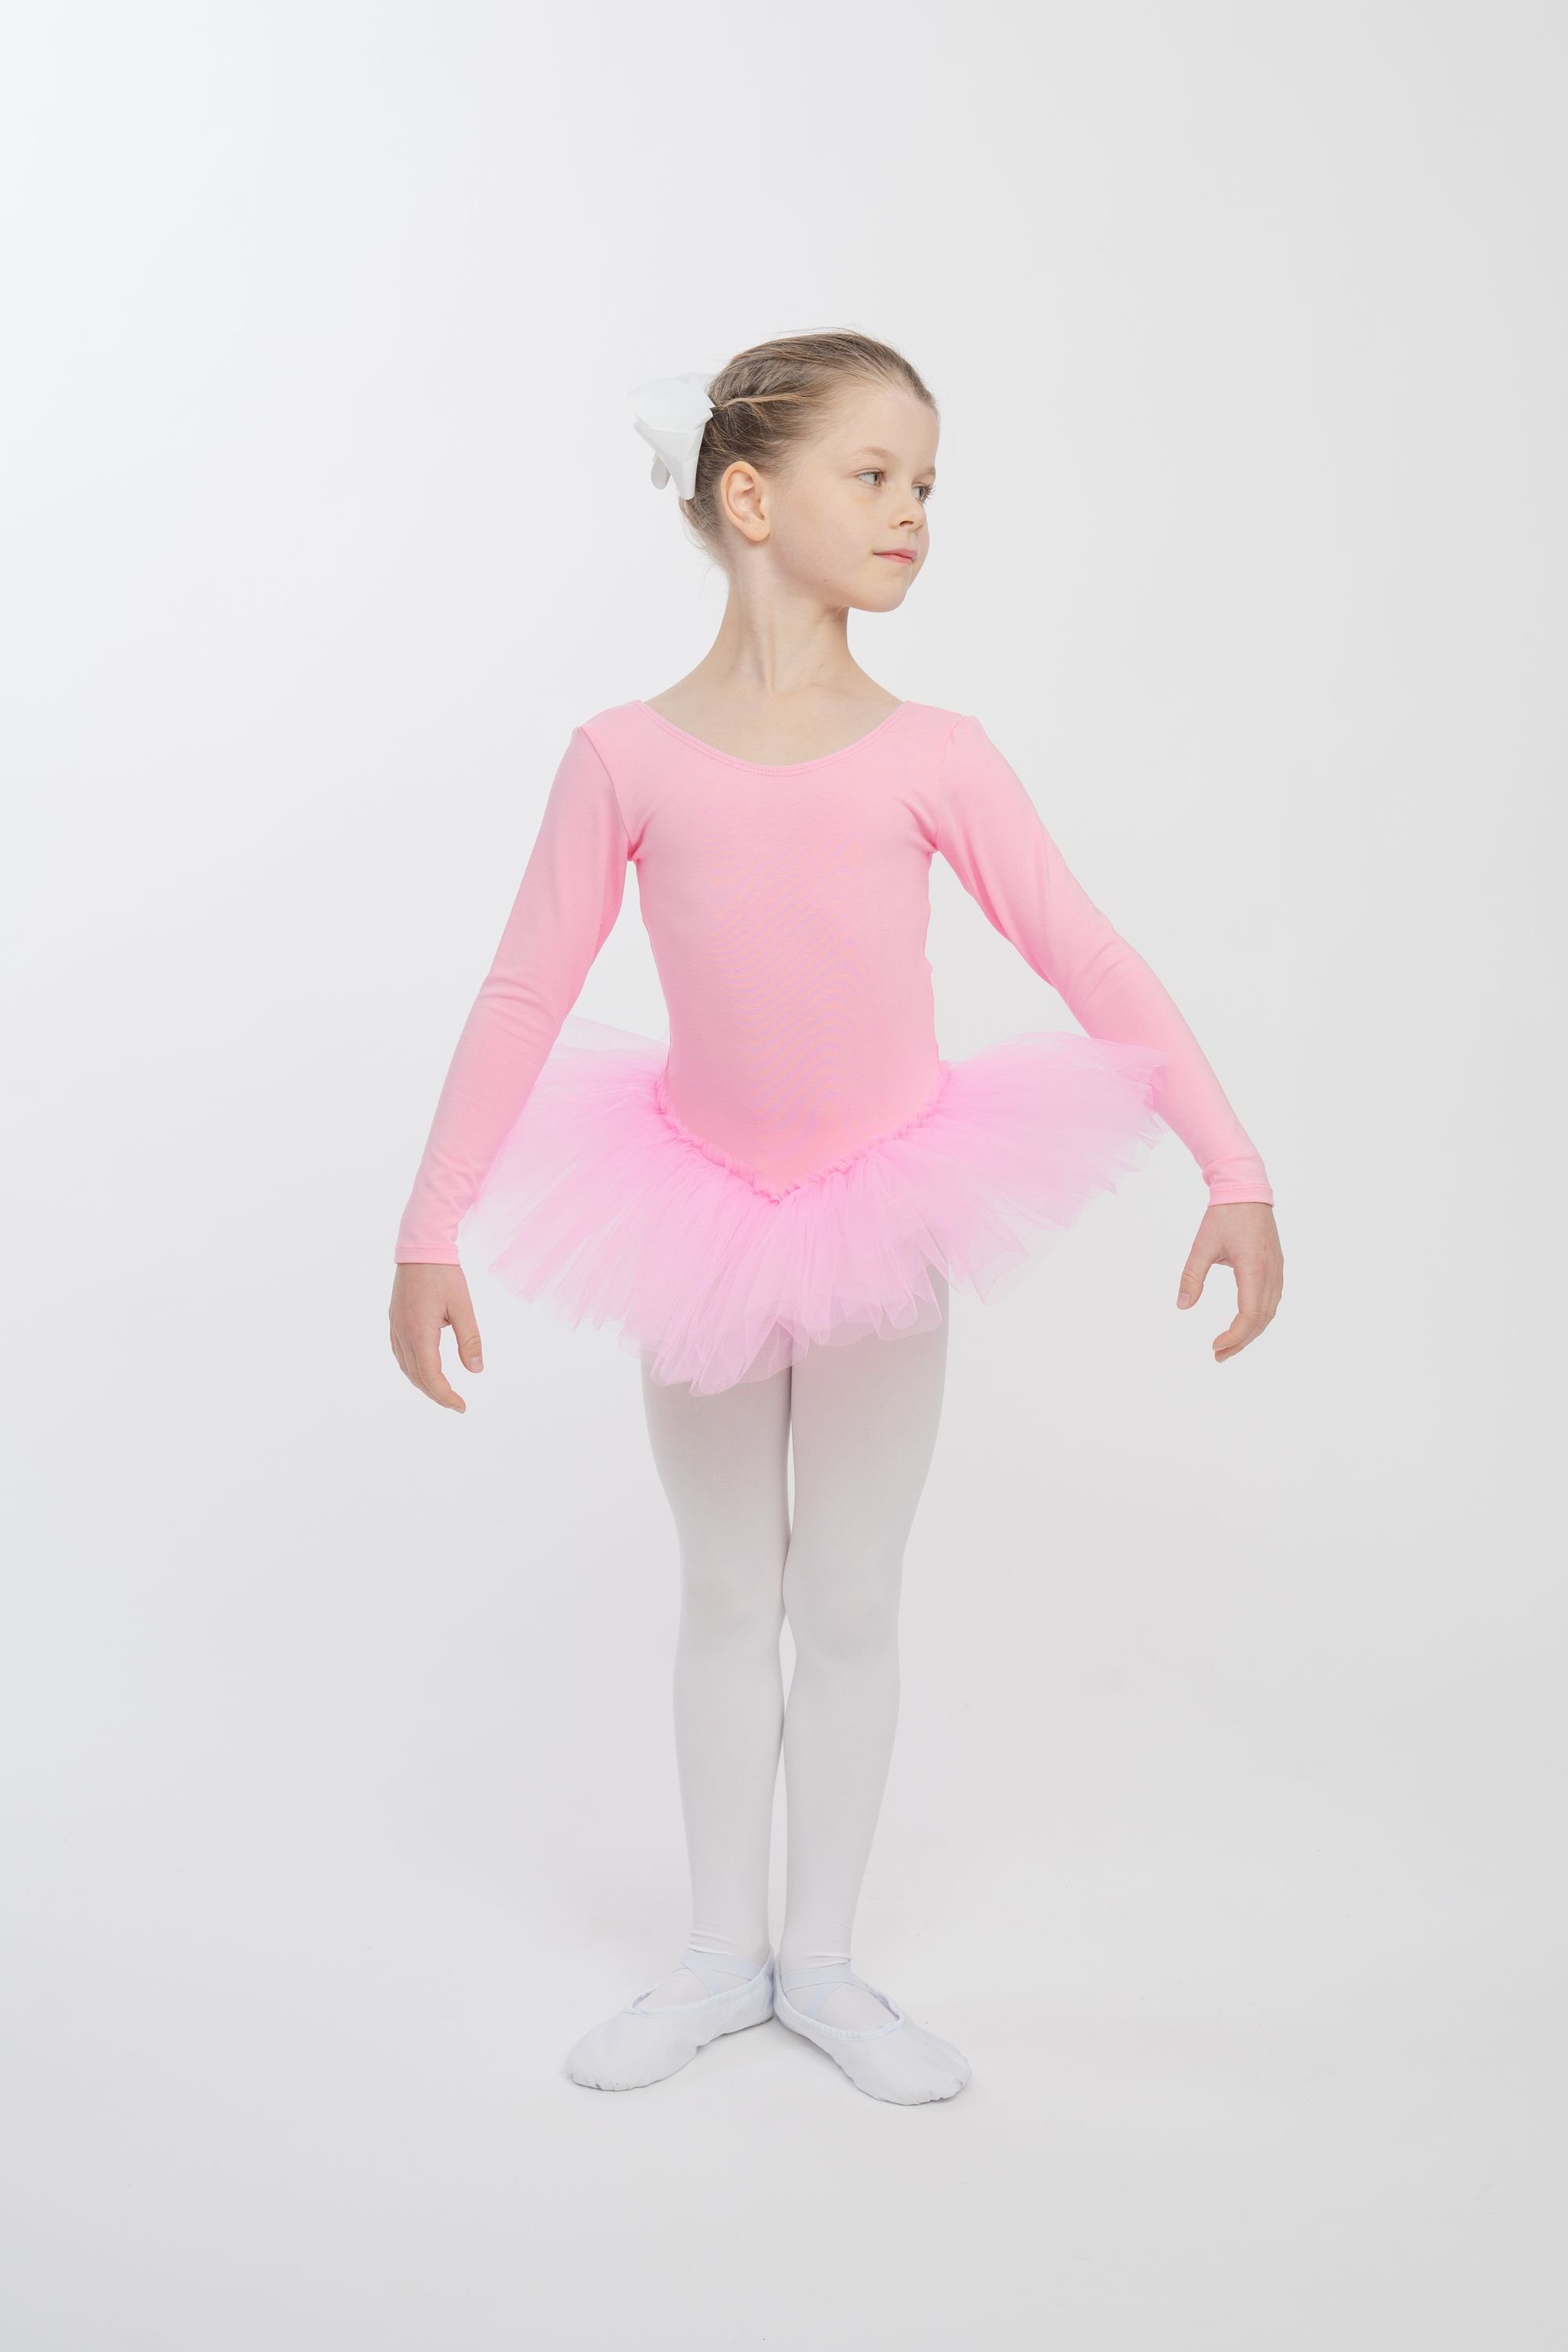 Tüllrock mit tanzmuster langem Tutu Tüllkleid für rosa Alea Ballettkleid Arm Ballett mit Mädchen